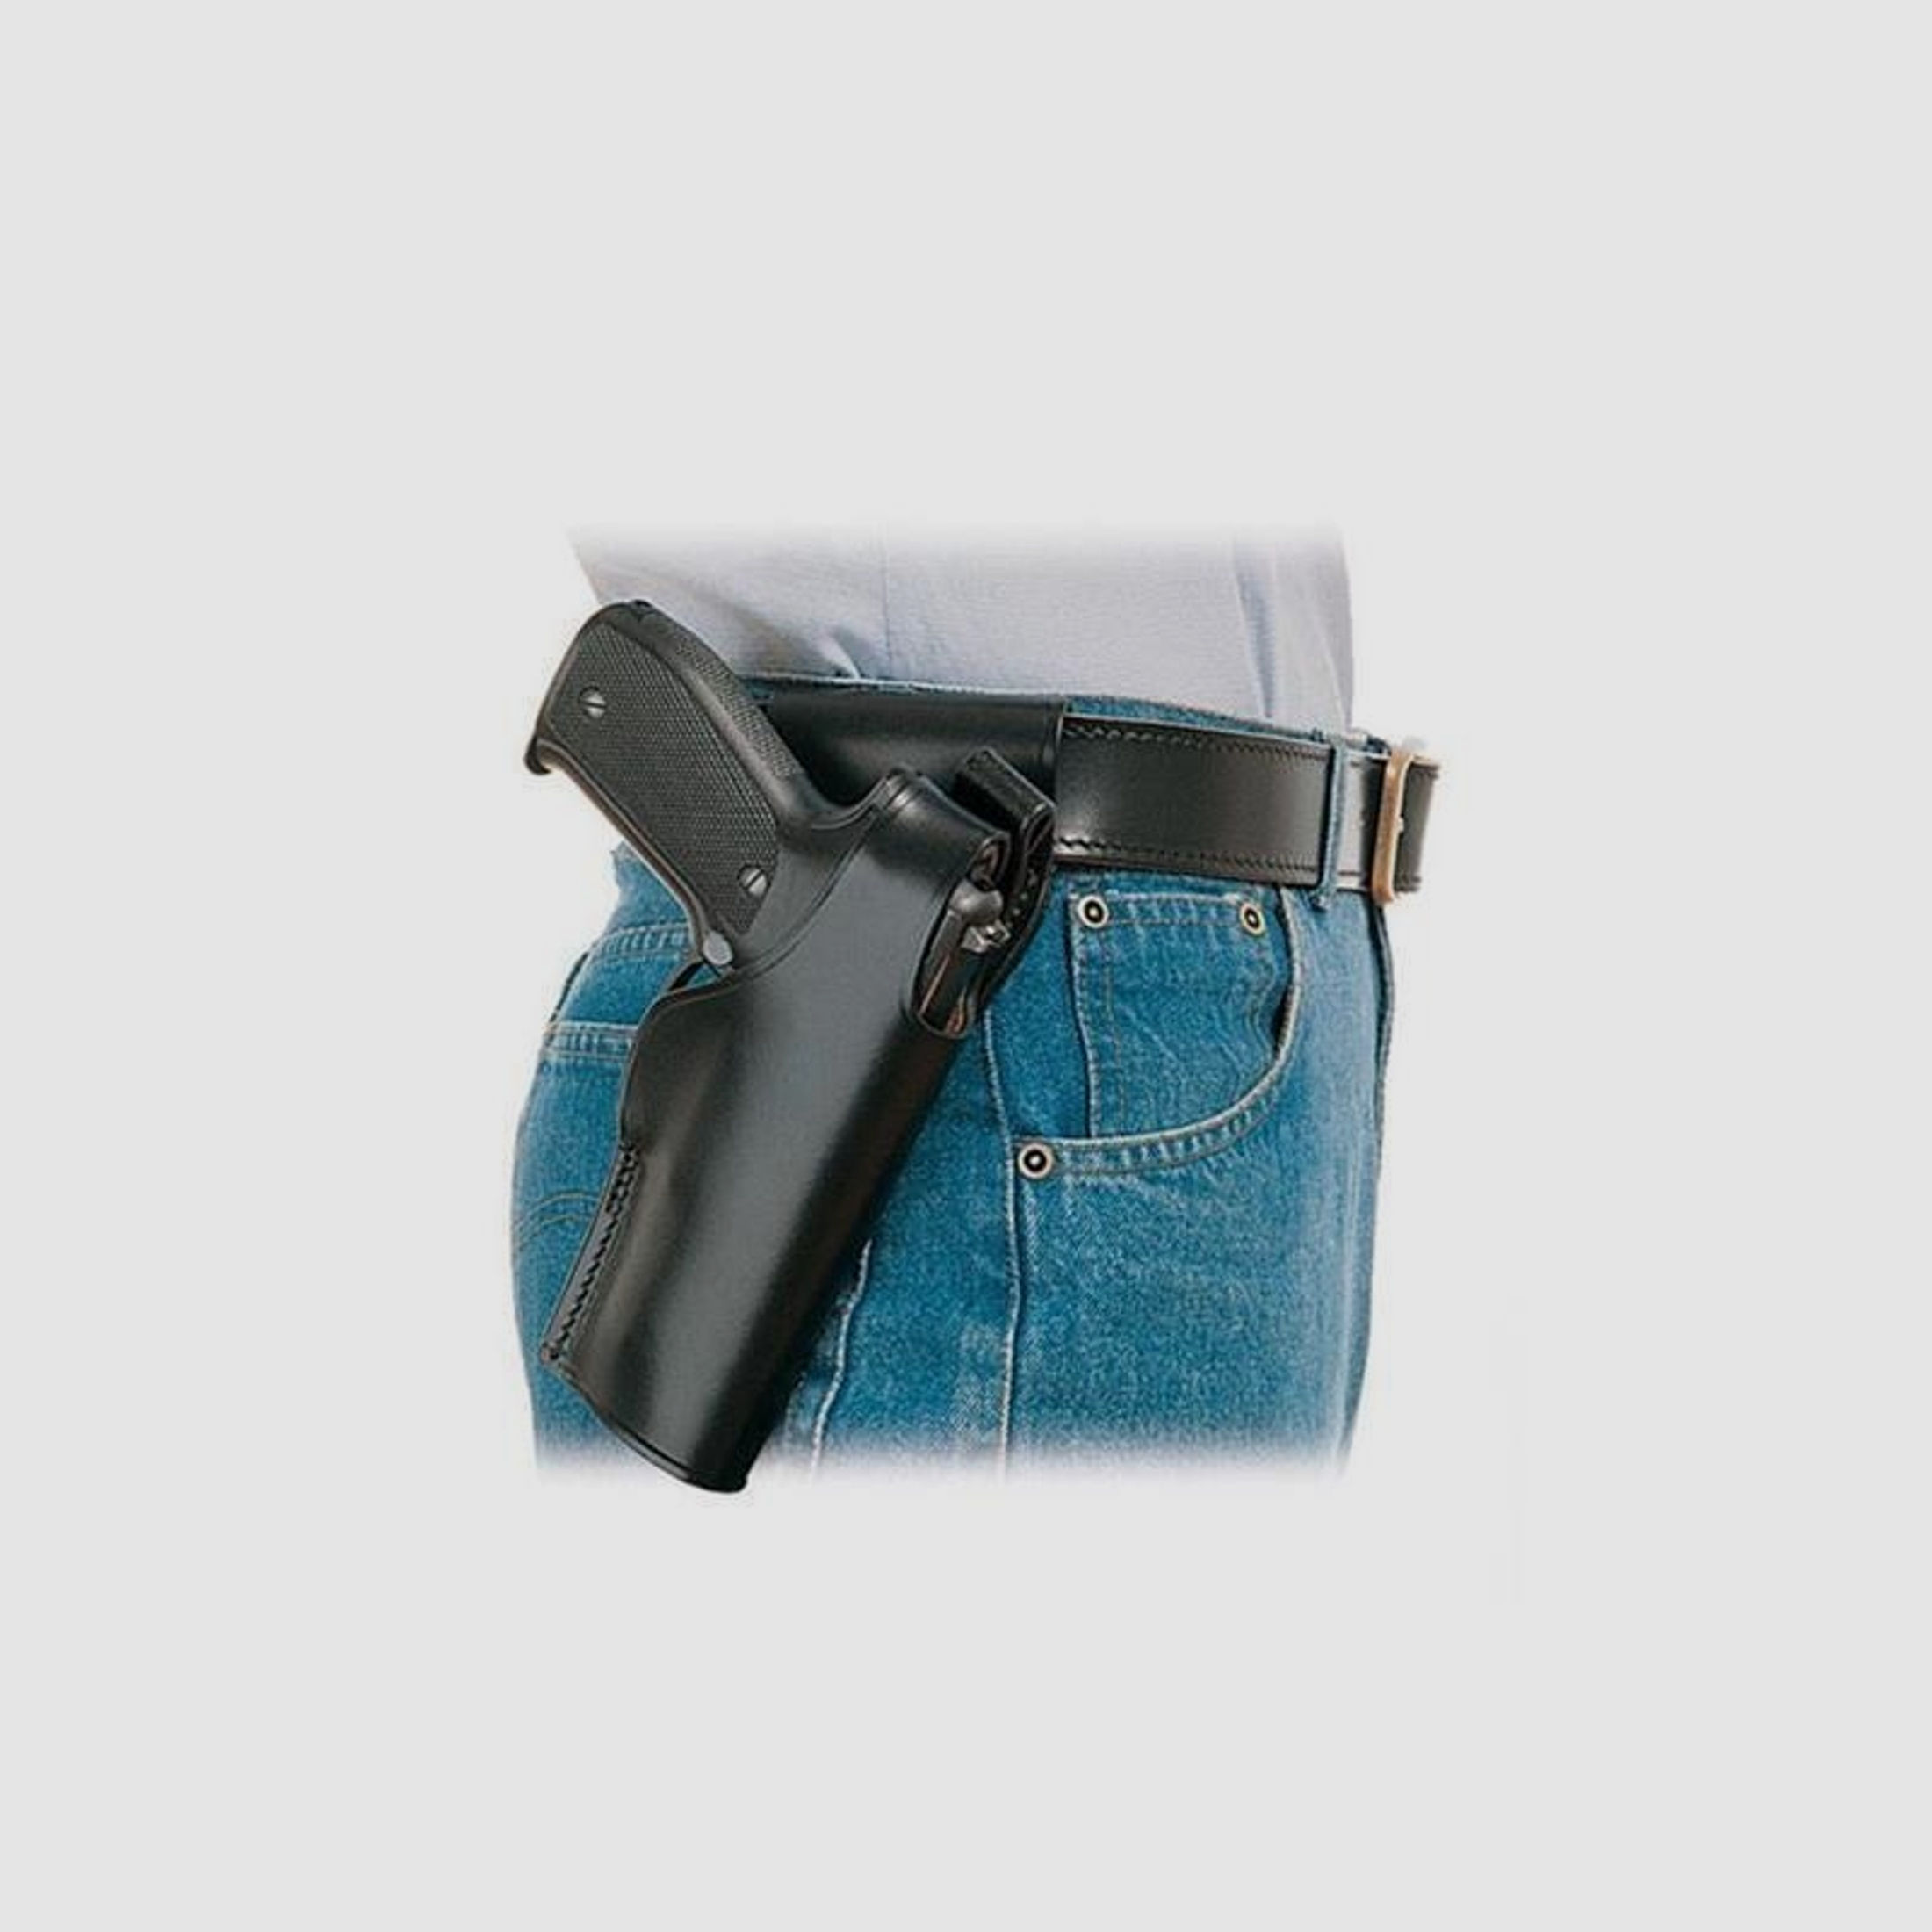 Gürtelholster SPITFIRE Glock 34/35 Braun Linkshänder